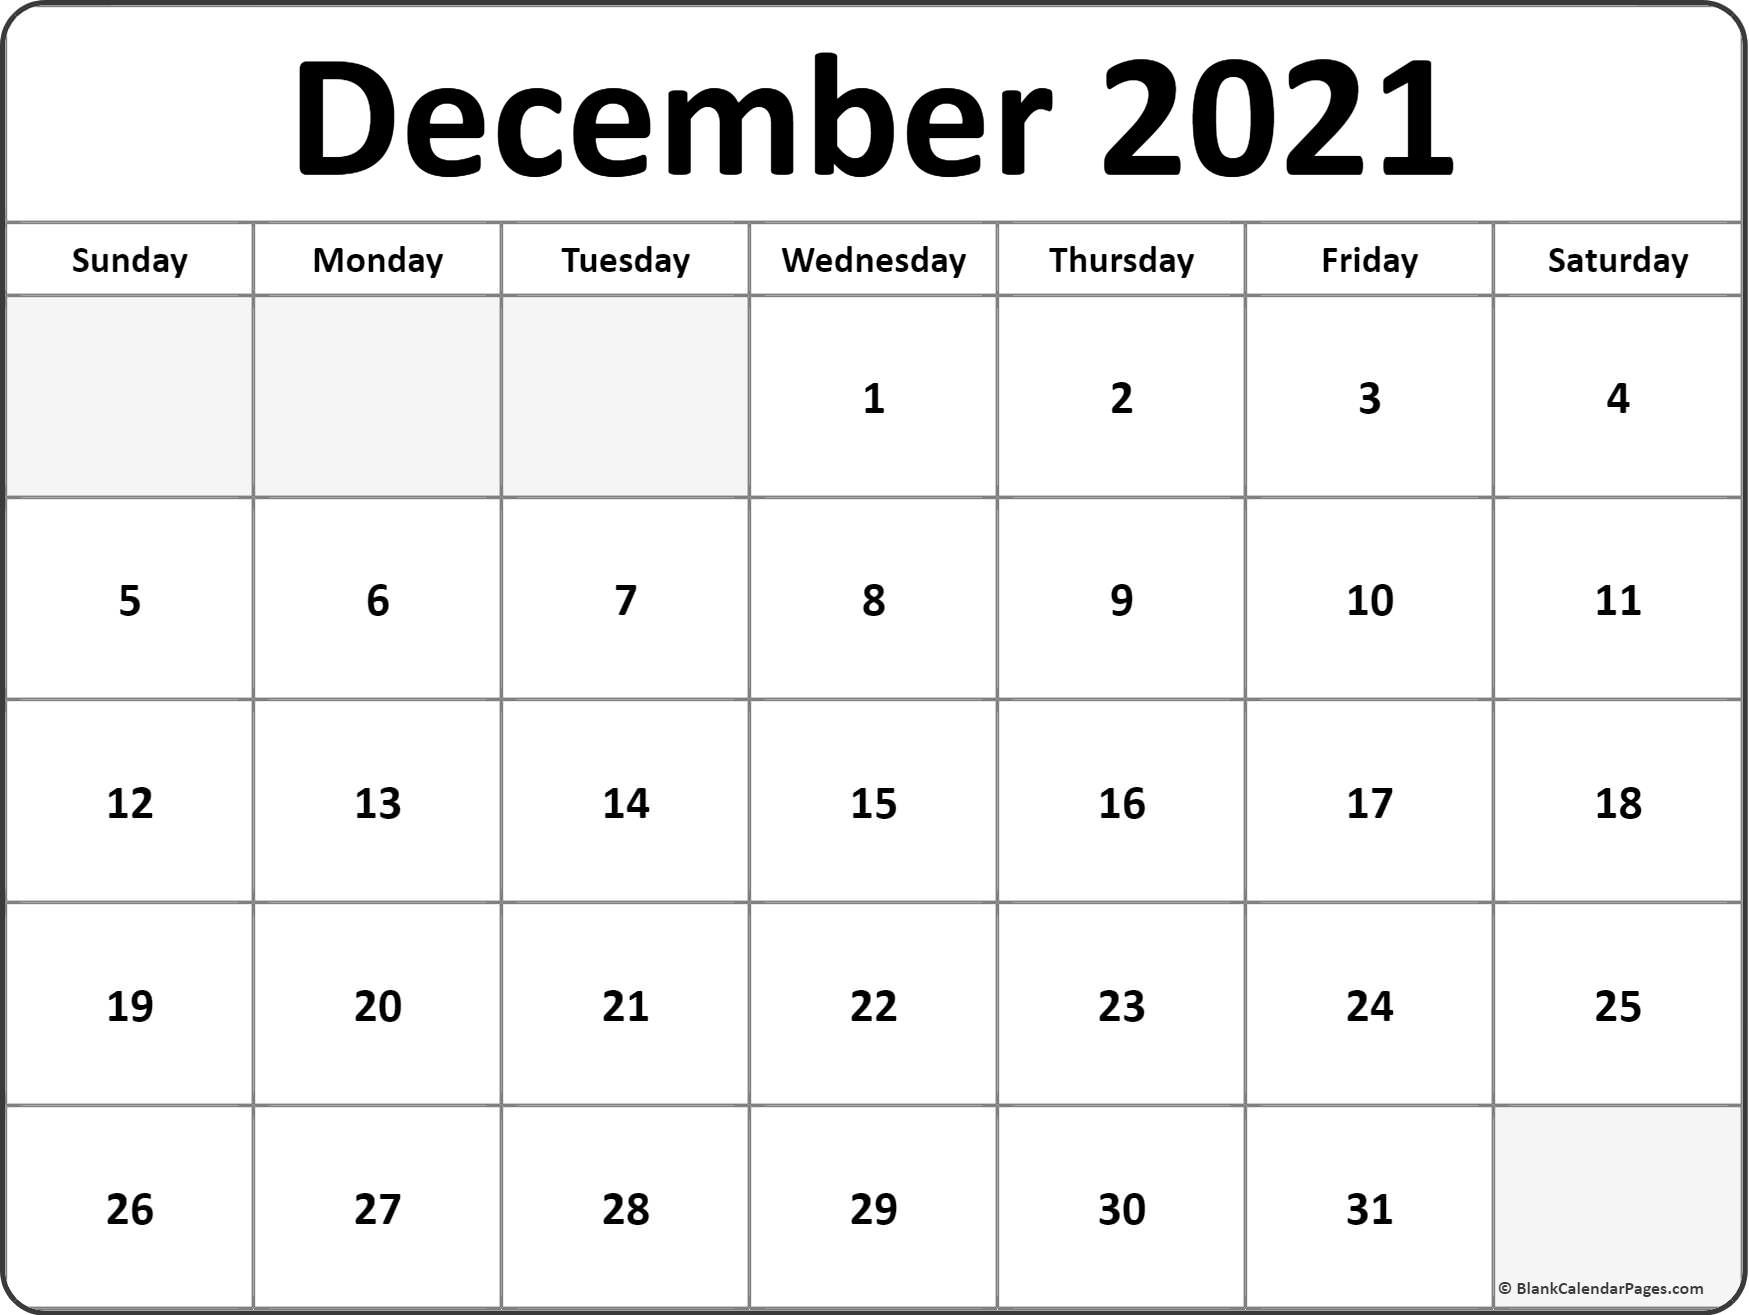 CAL=December 2021 calendar